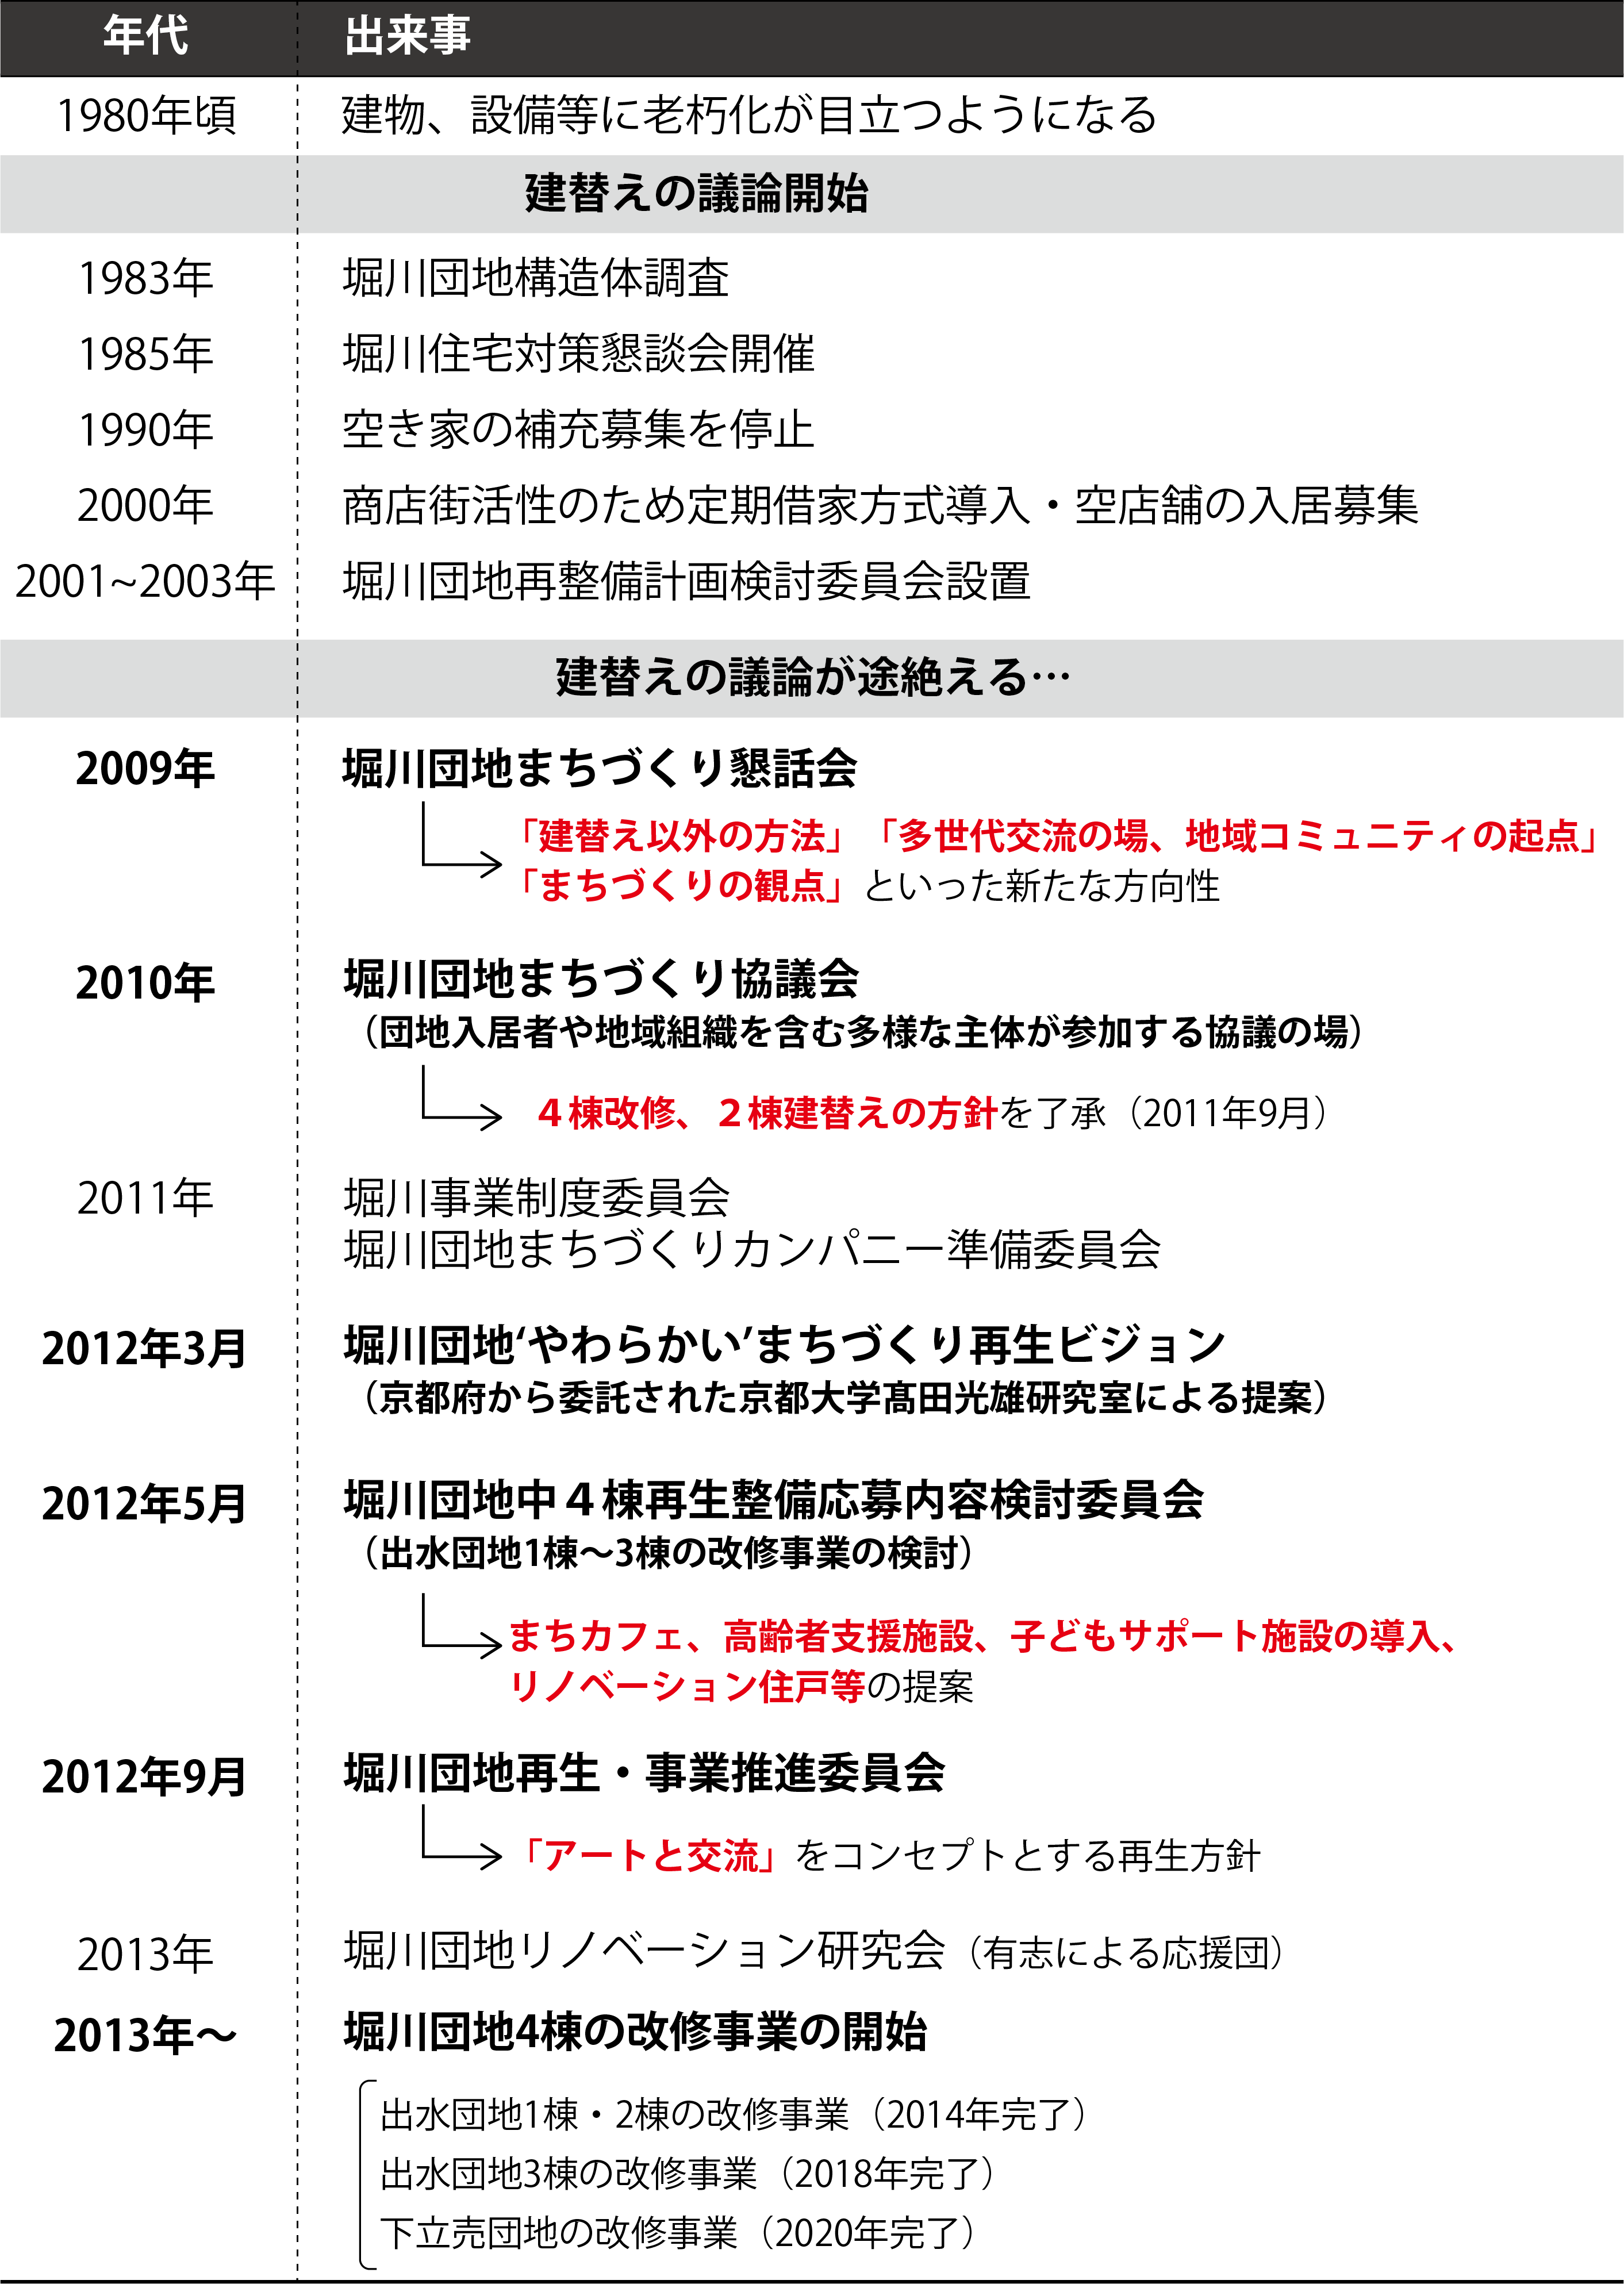 表1．堀川団地の再生に関する年表